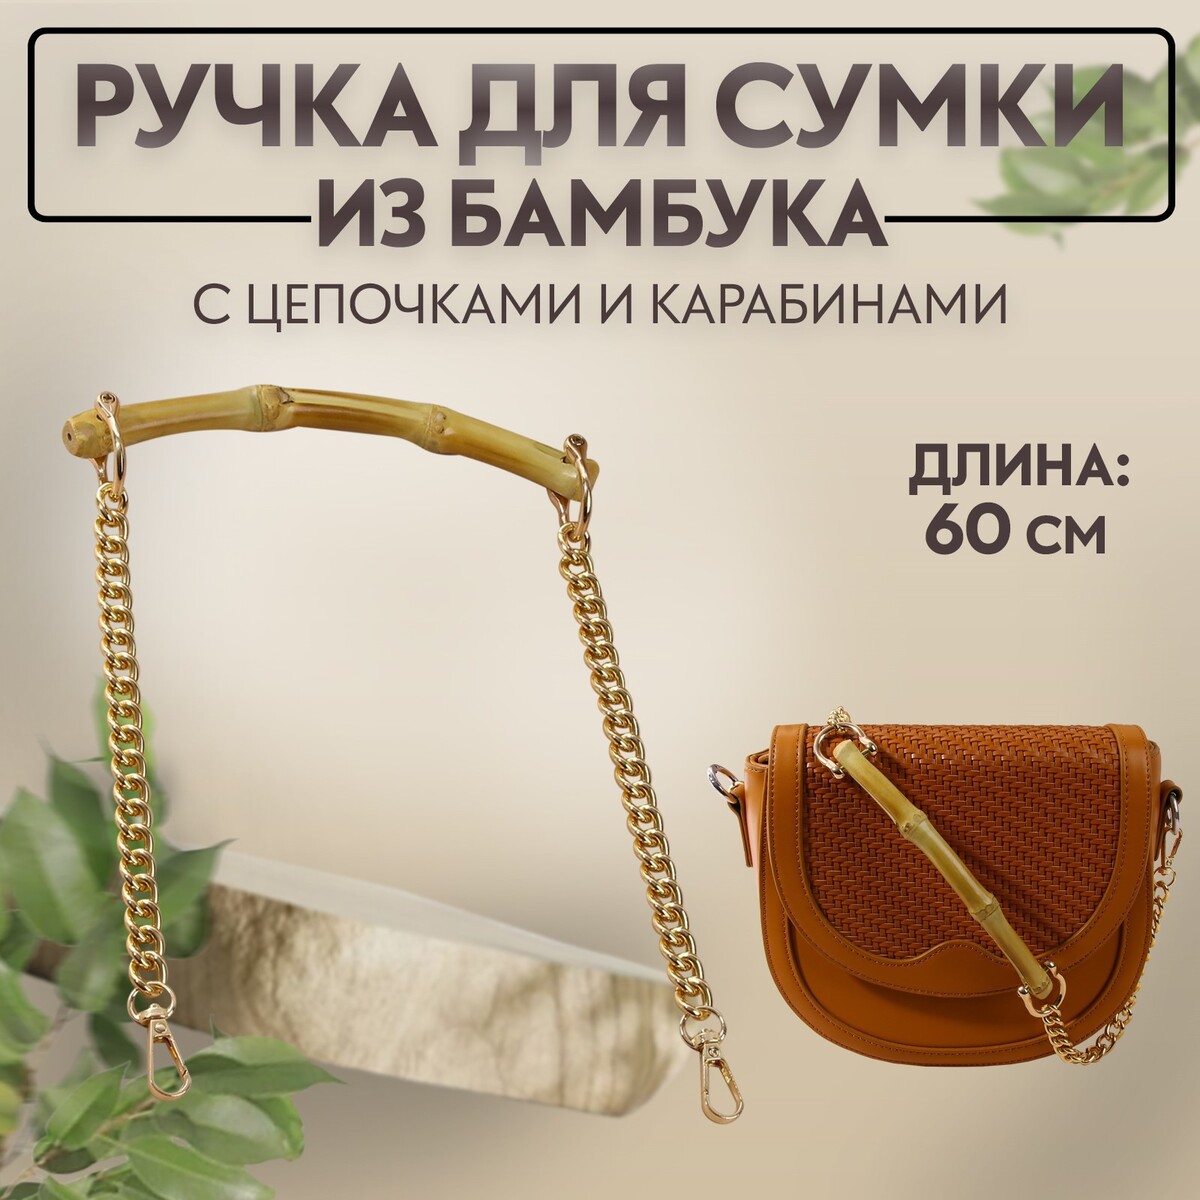 Ручка для сумки, бамбук, с цепочками и карабинами, 60 см, цвет золотой ручка для сумки с цепочками и карабинами 120 × 1 8 см бордовый